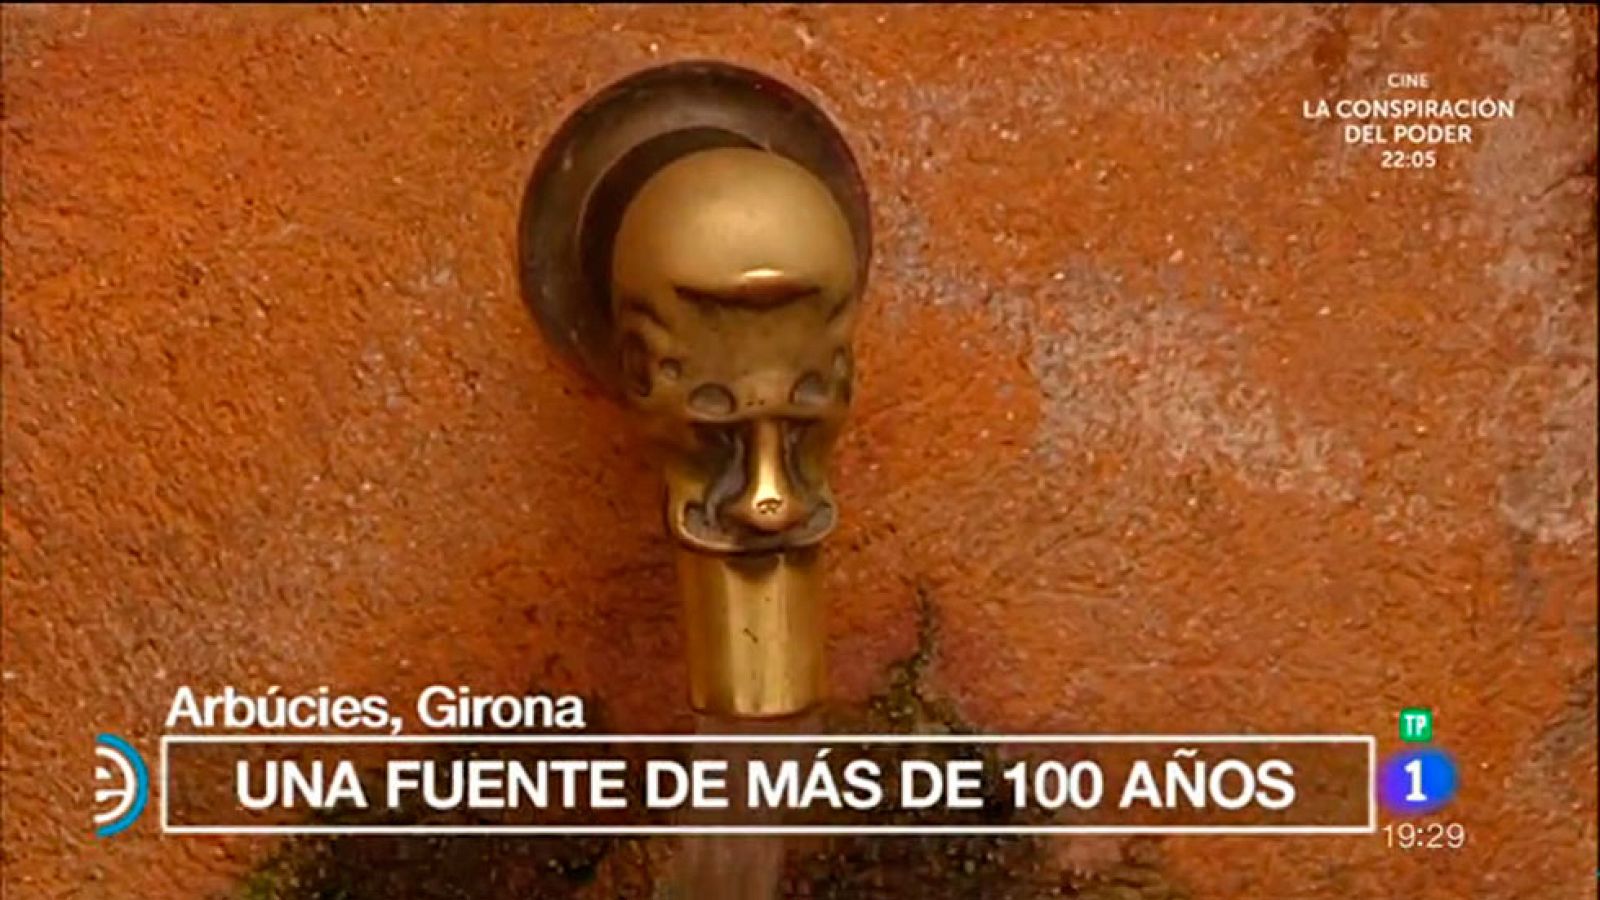 España Directo - Una fuente de más de 100 años en Arbúcies, Girona